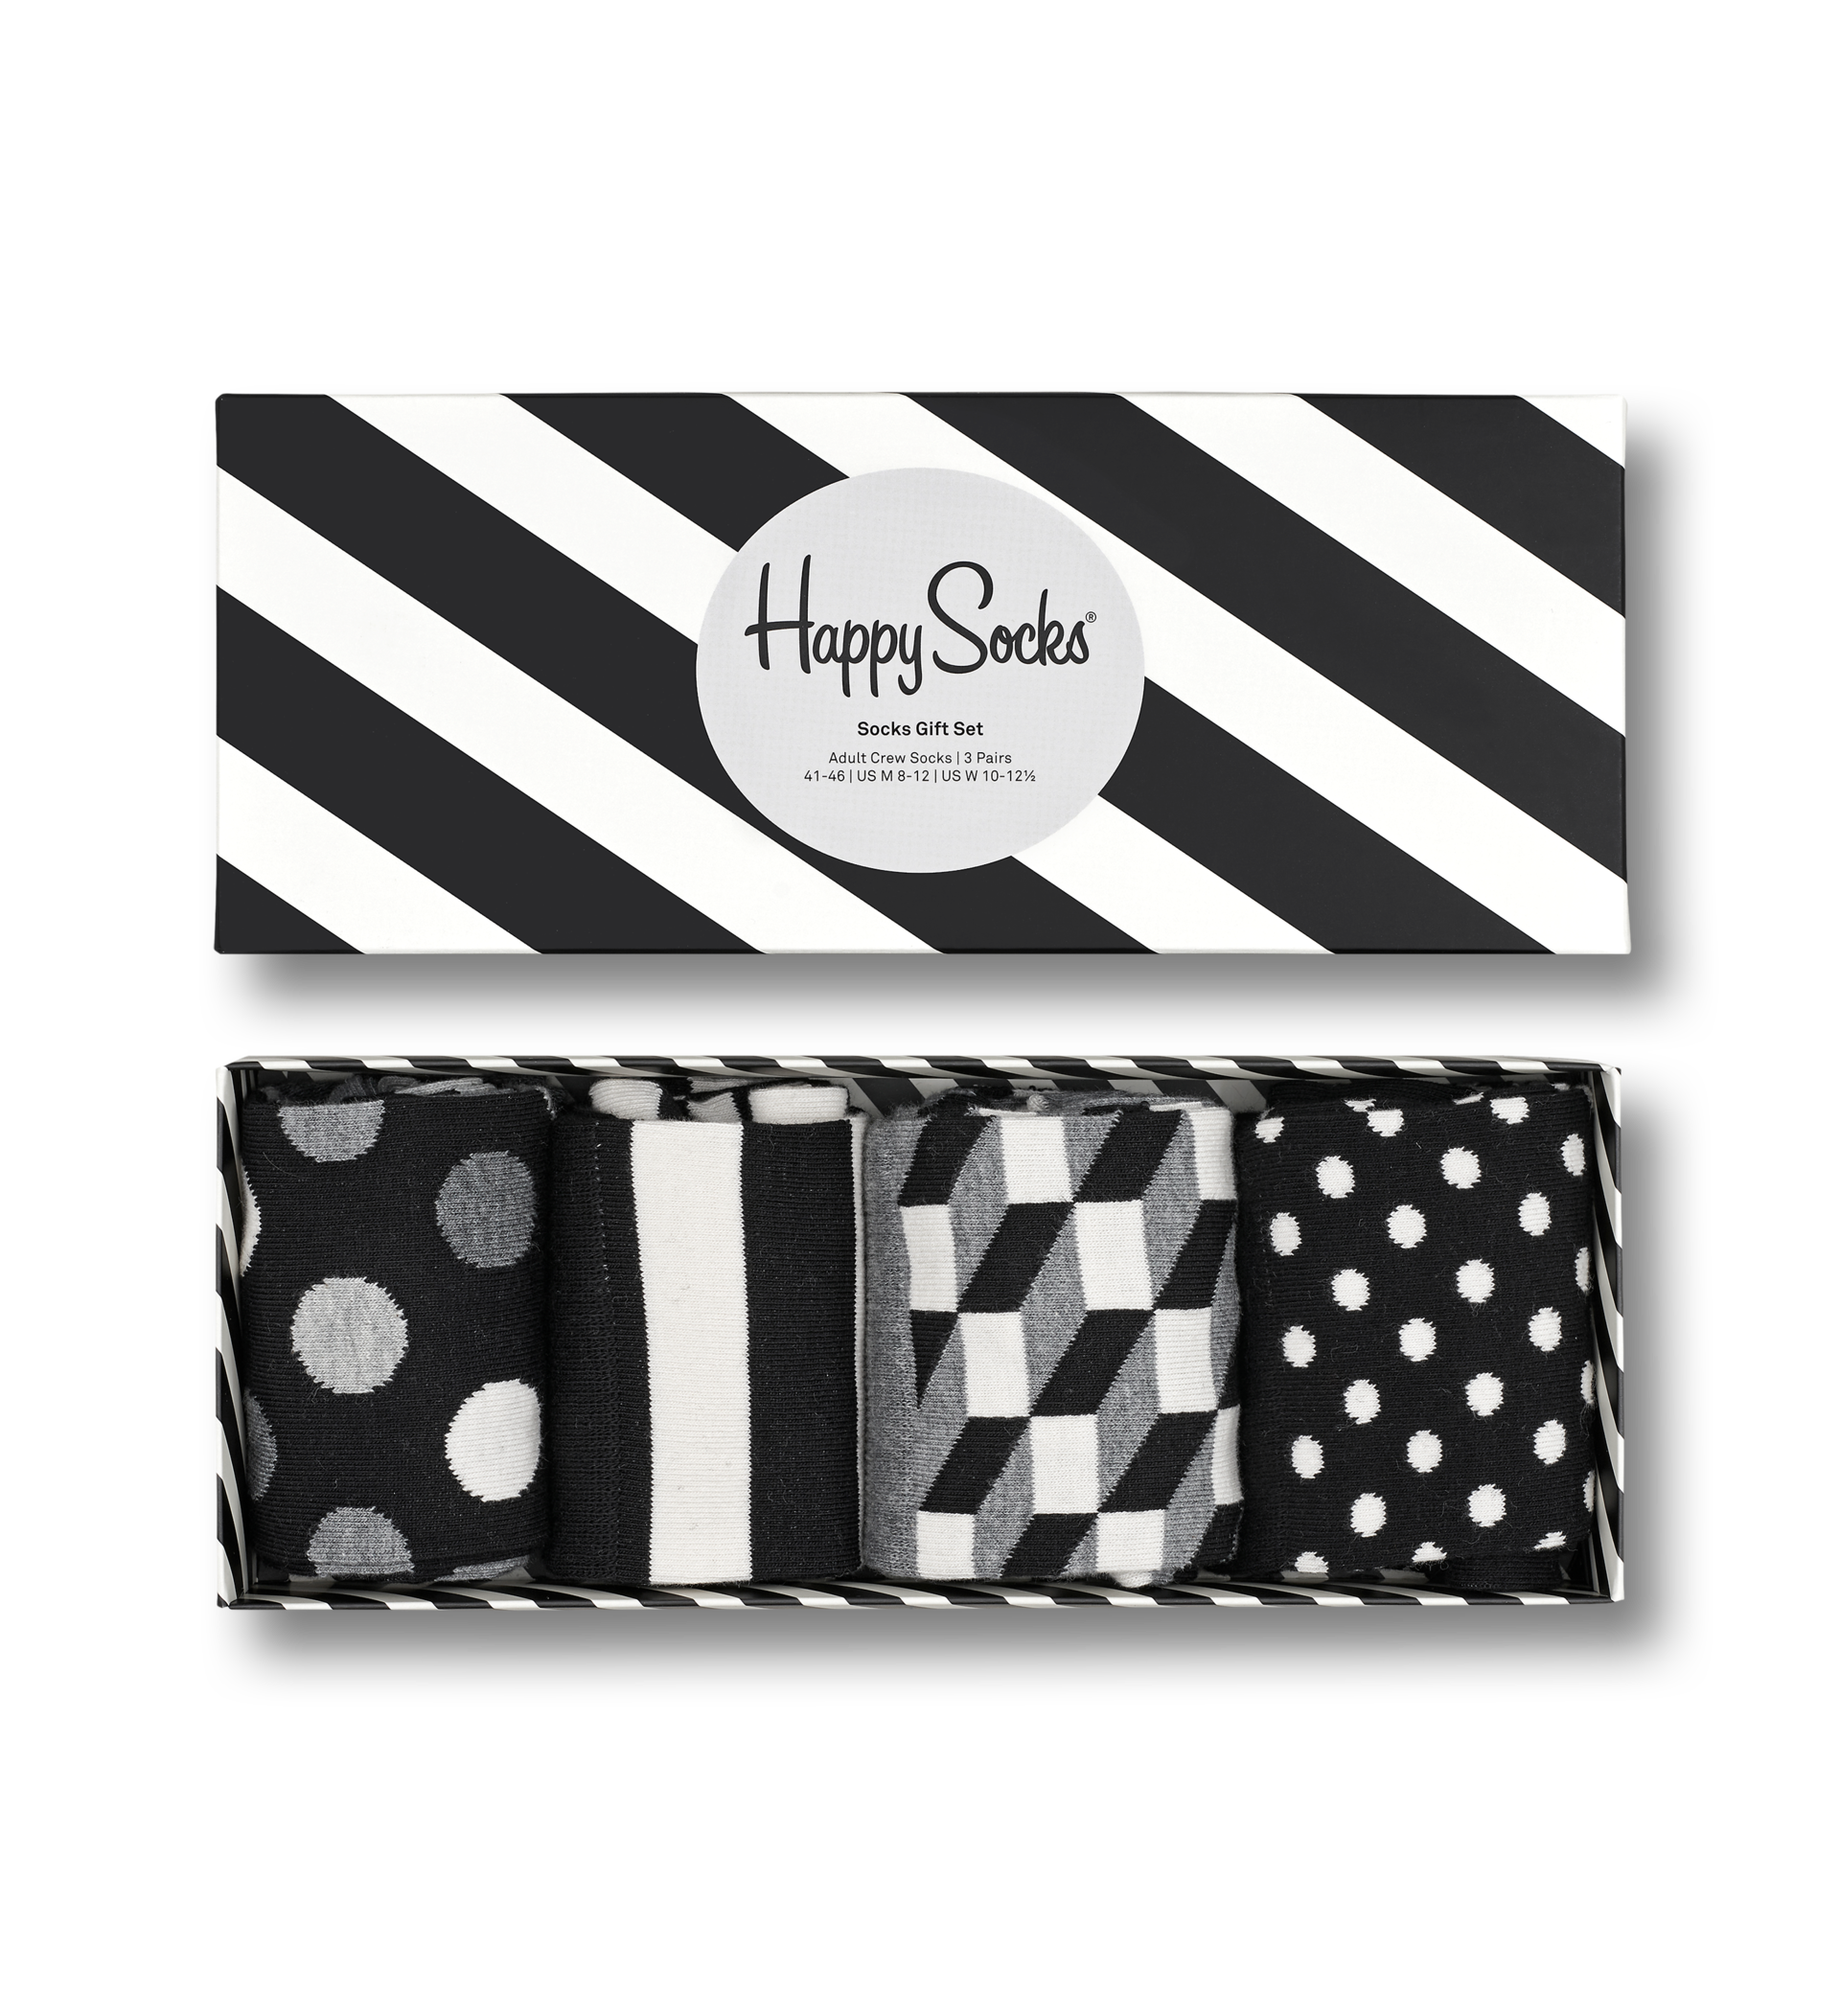 schwarz weiß Black & White Gift Box Smileys Geschenk-Box Happy Socks 